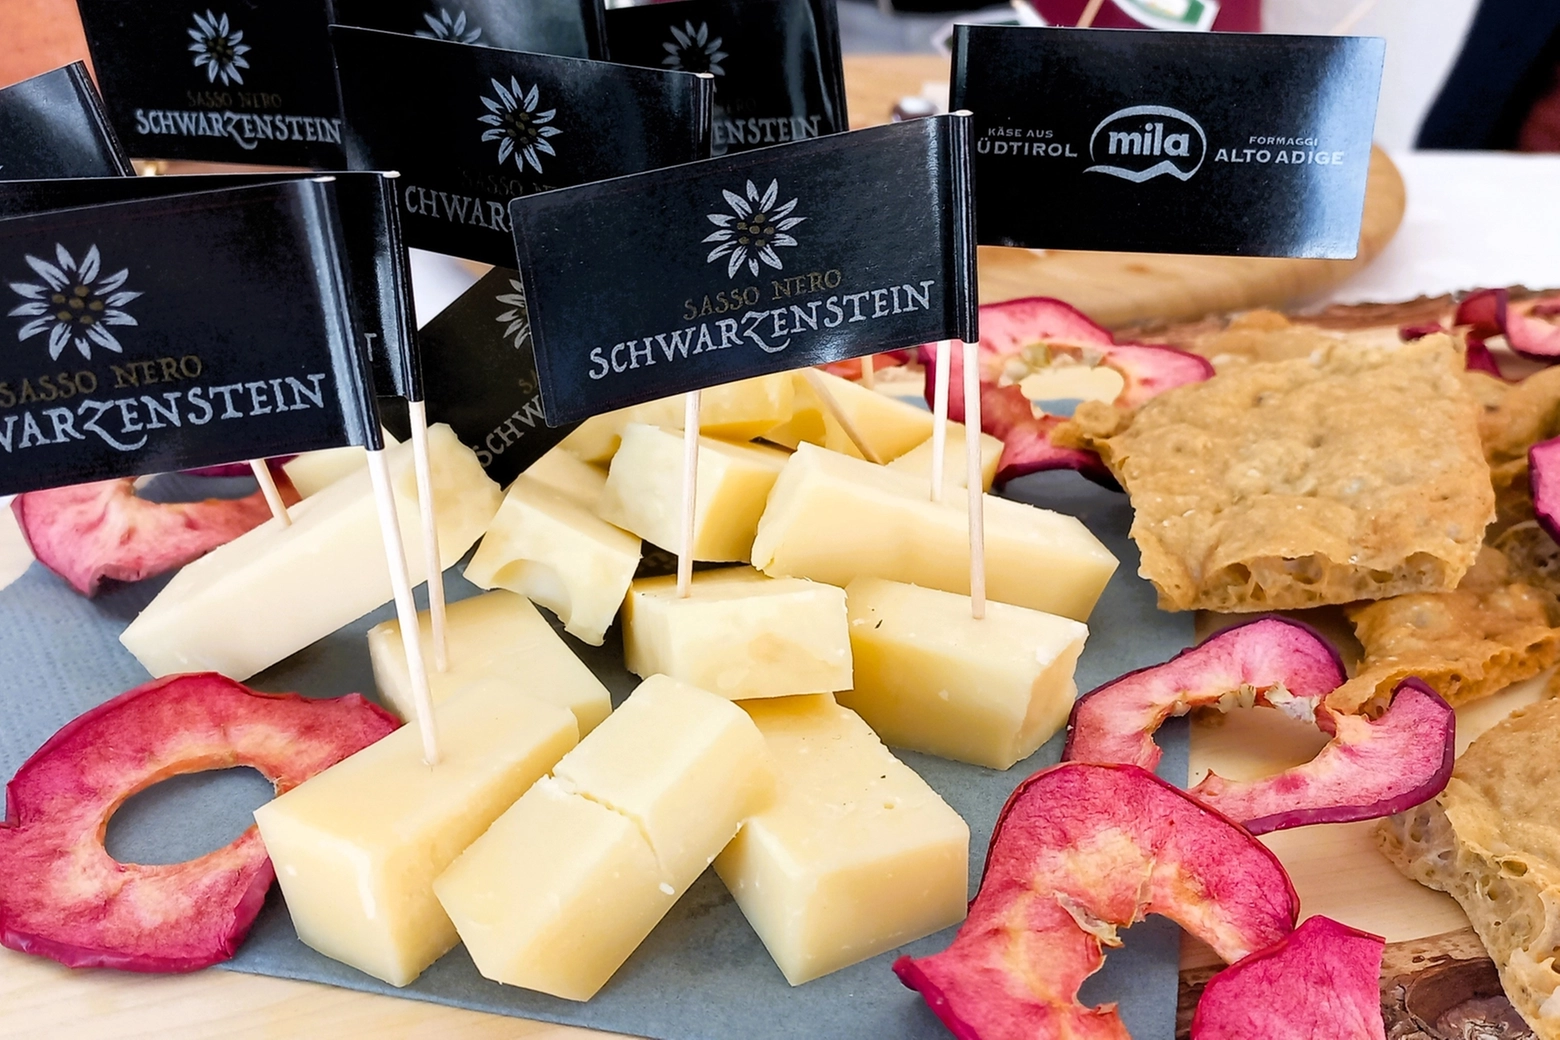 Degustazioni vini, formaggi, speck e pane casereccio all'Hotel Holzerhof: tutti prodotti dell'Alto Adige